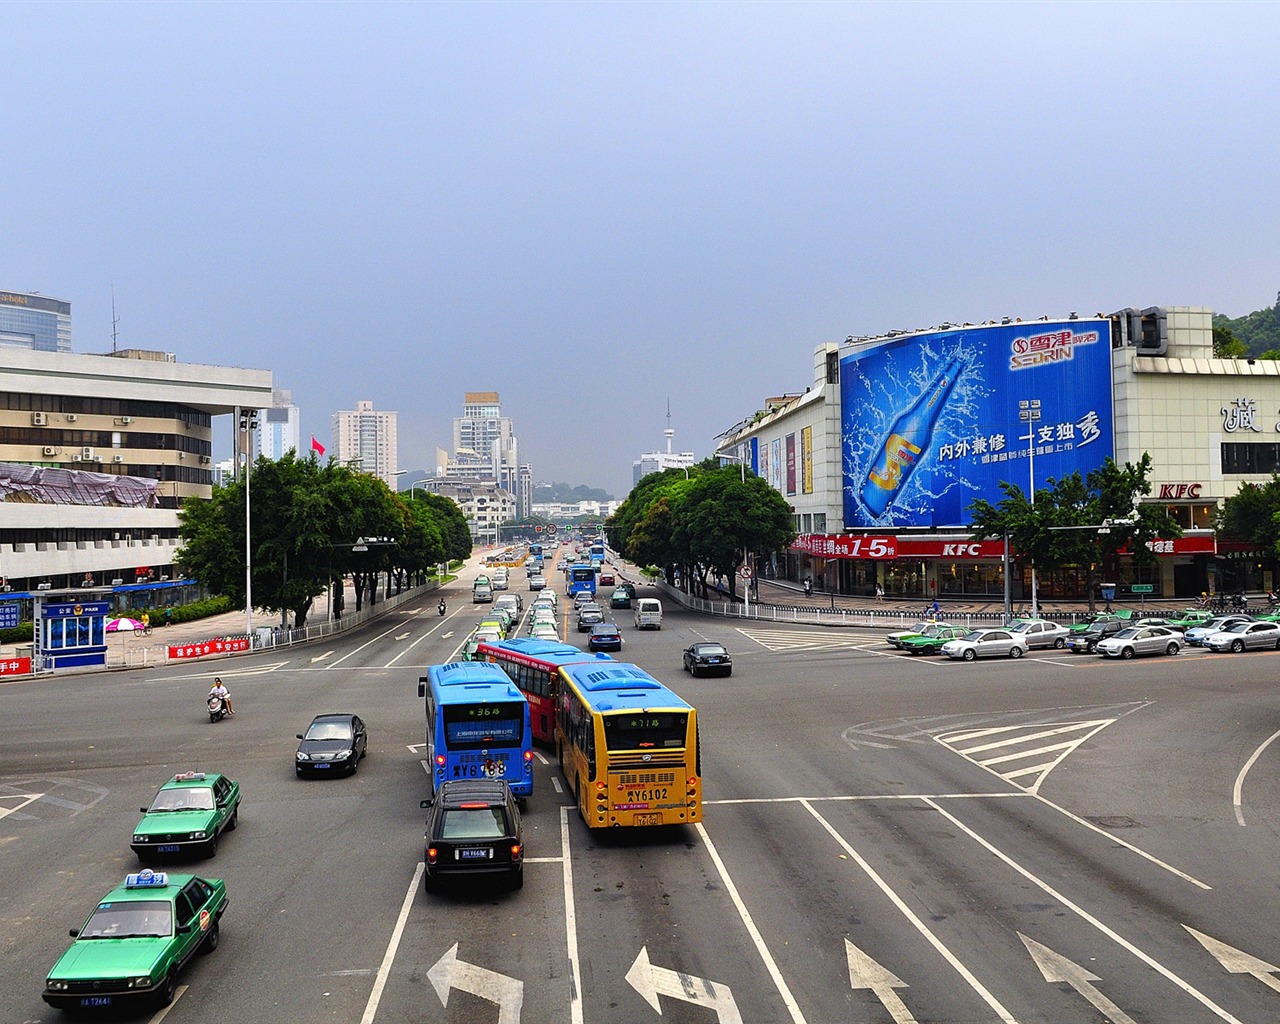 rue Fuzhou avec la prise de vue (photo Travaux de changement) #3 - 1280x1024